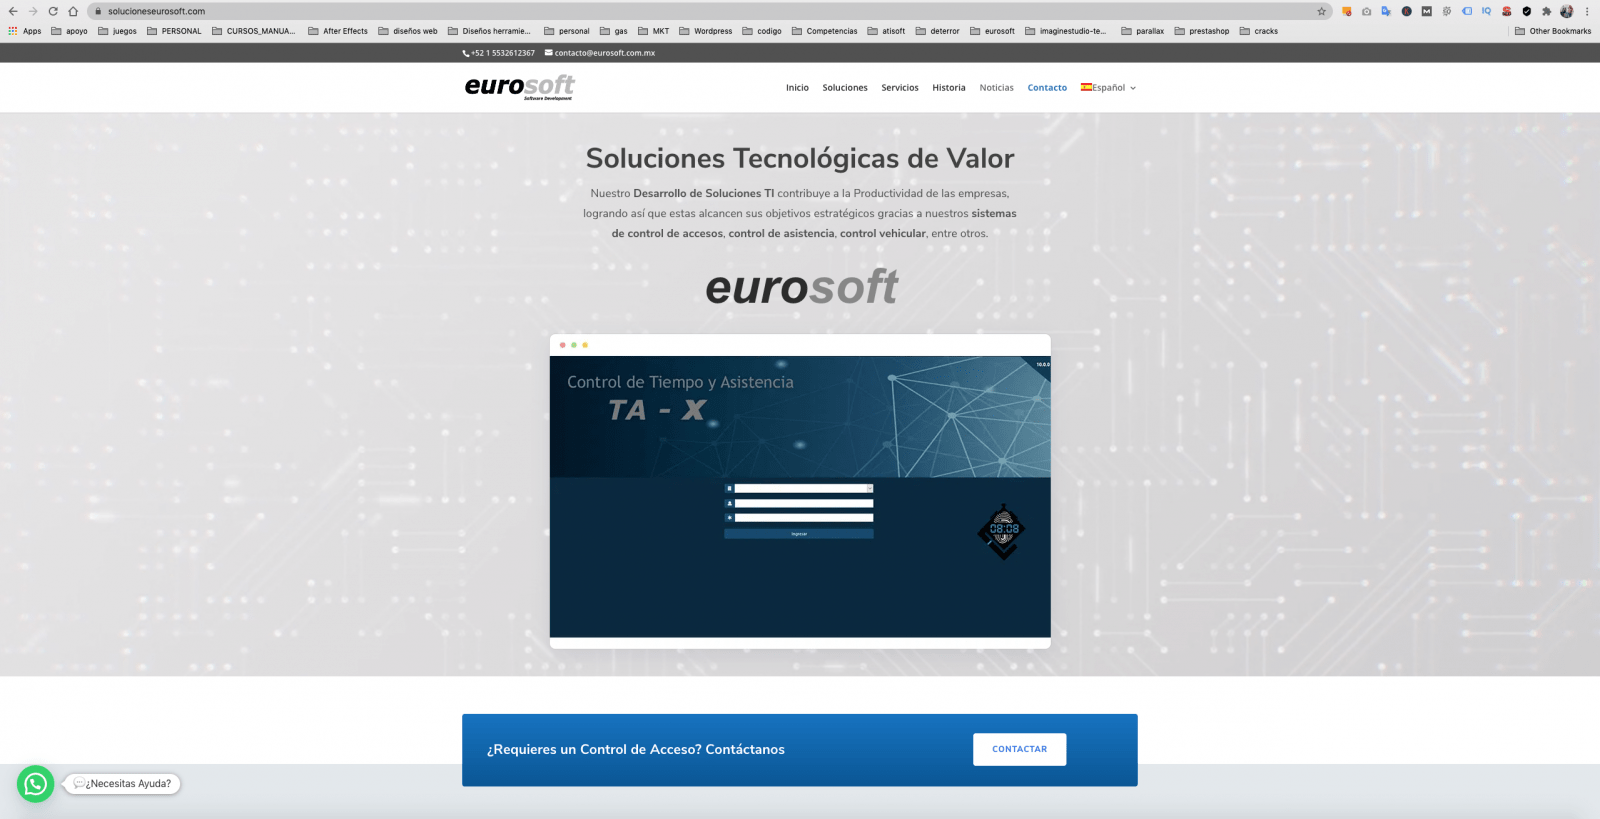 diseño de pagina web eurosoft